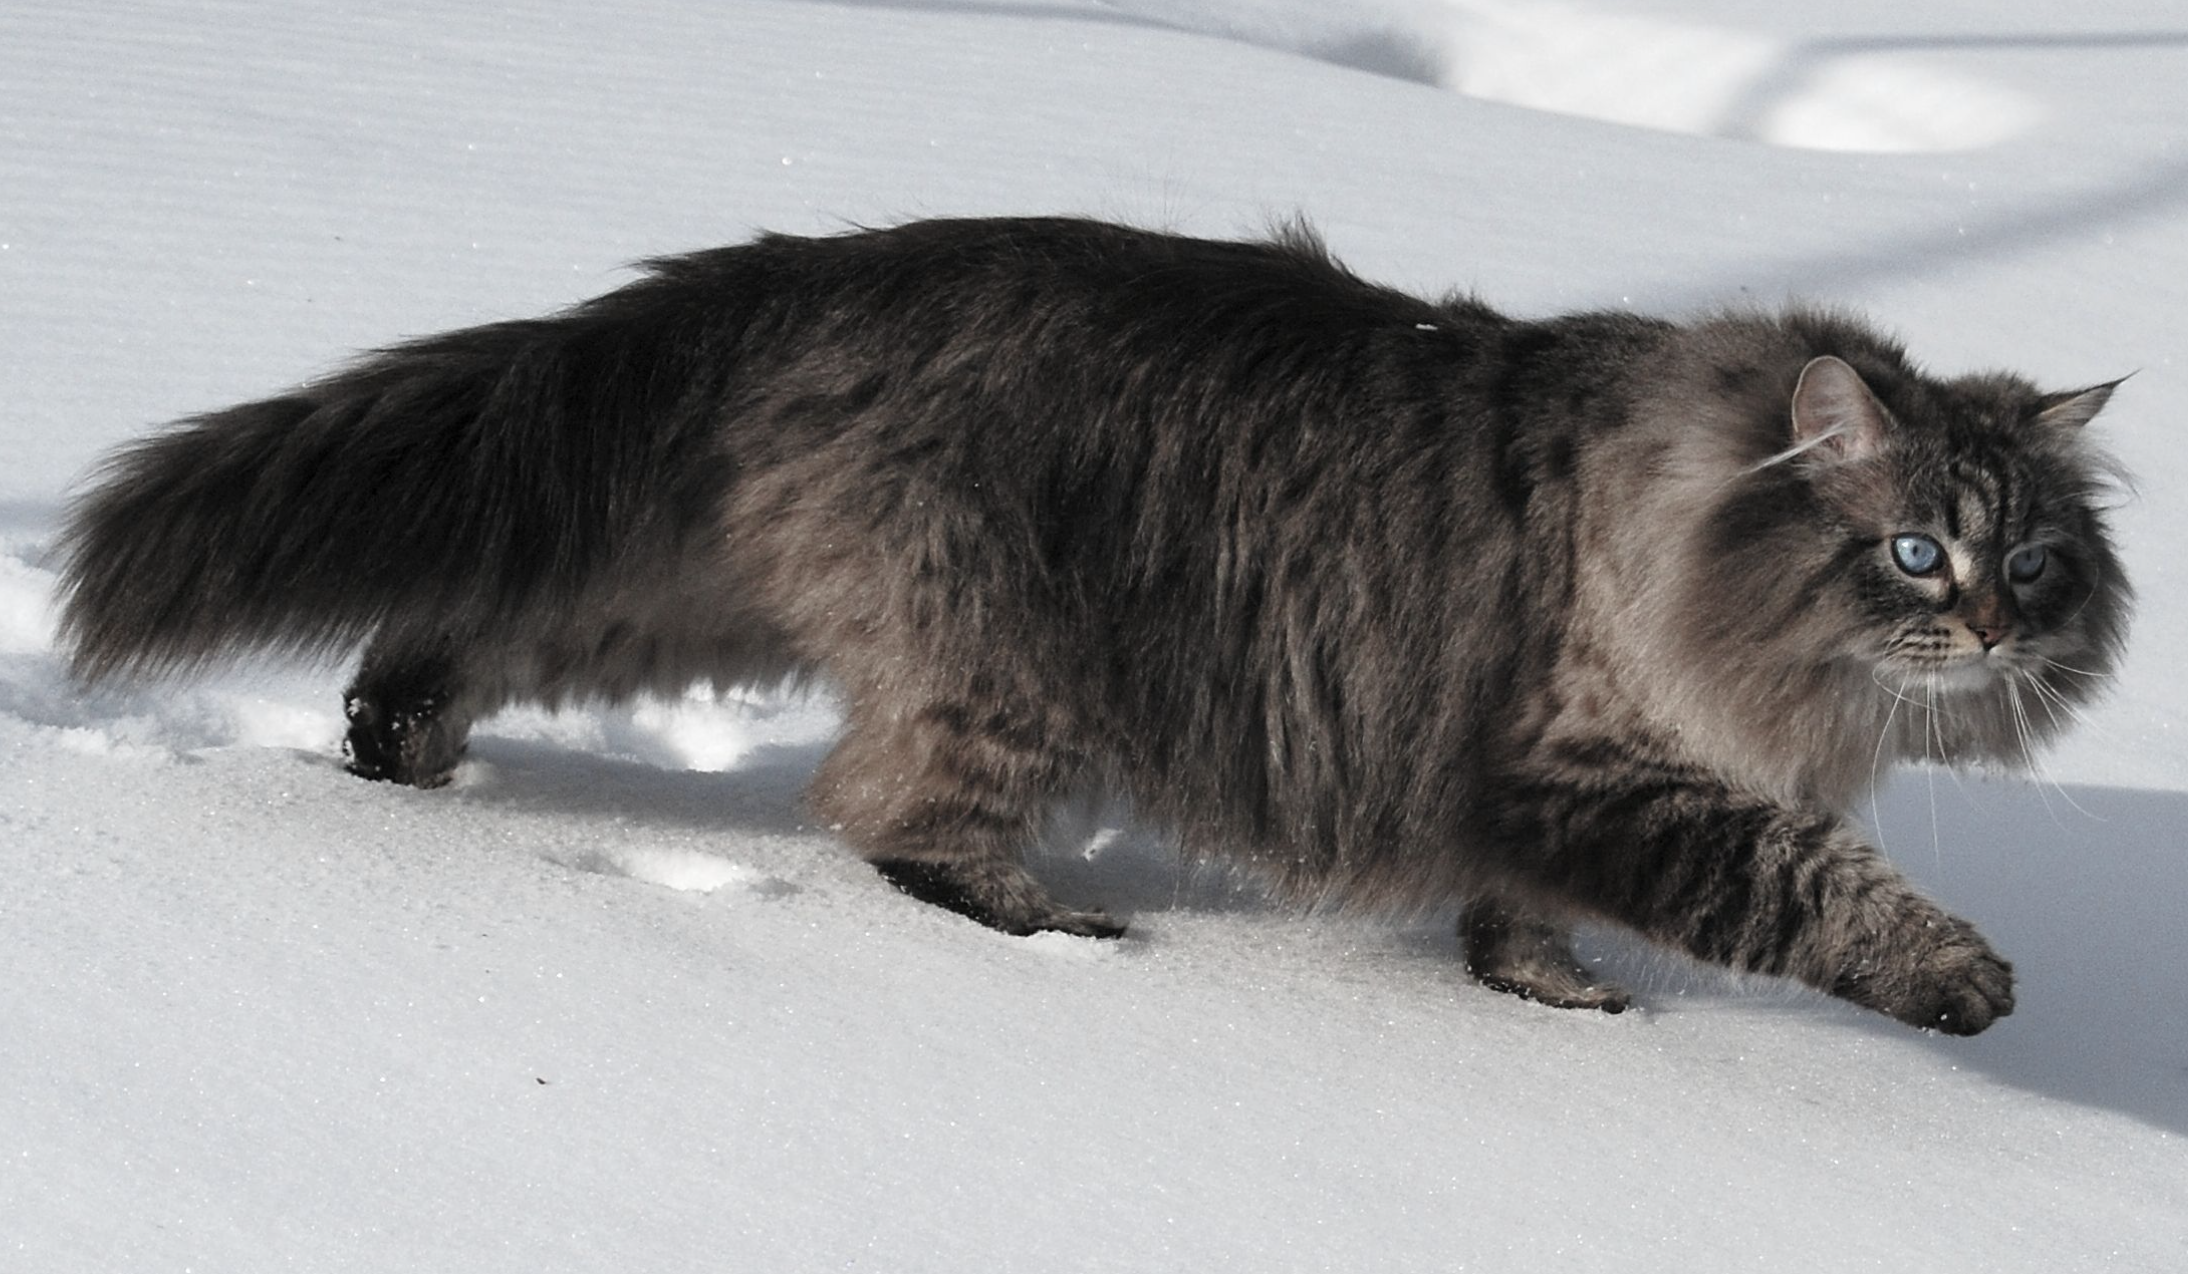 Сибирские кошки обожают доминировать, поскольку от природы лидеры, но к хозяину они ласковы и относятся с уважением. Фото © Wikimedia Commons / Jan Warner